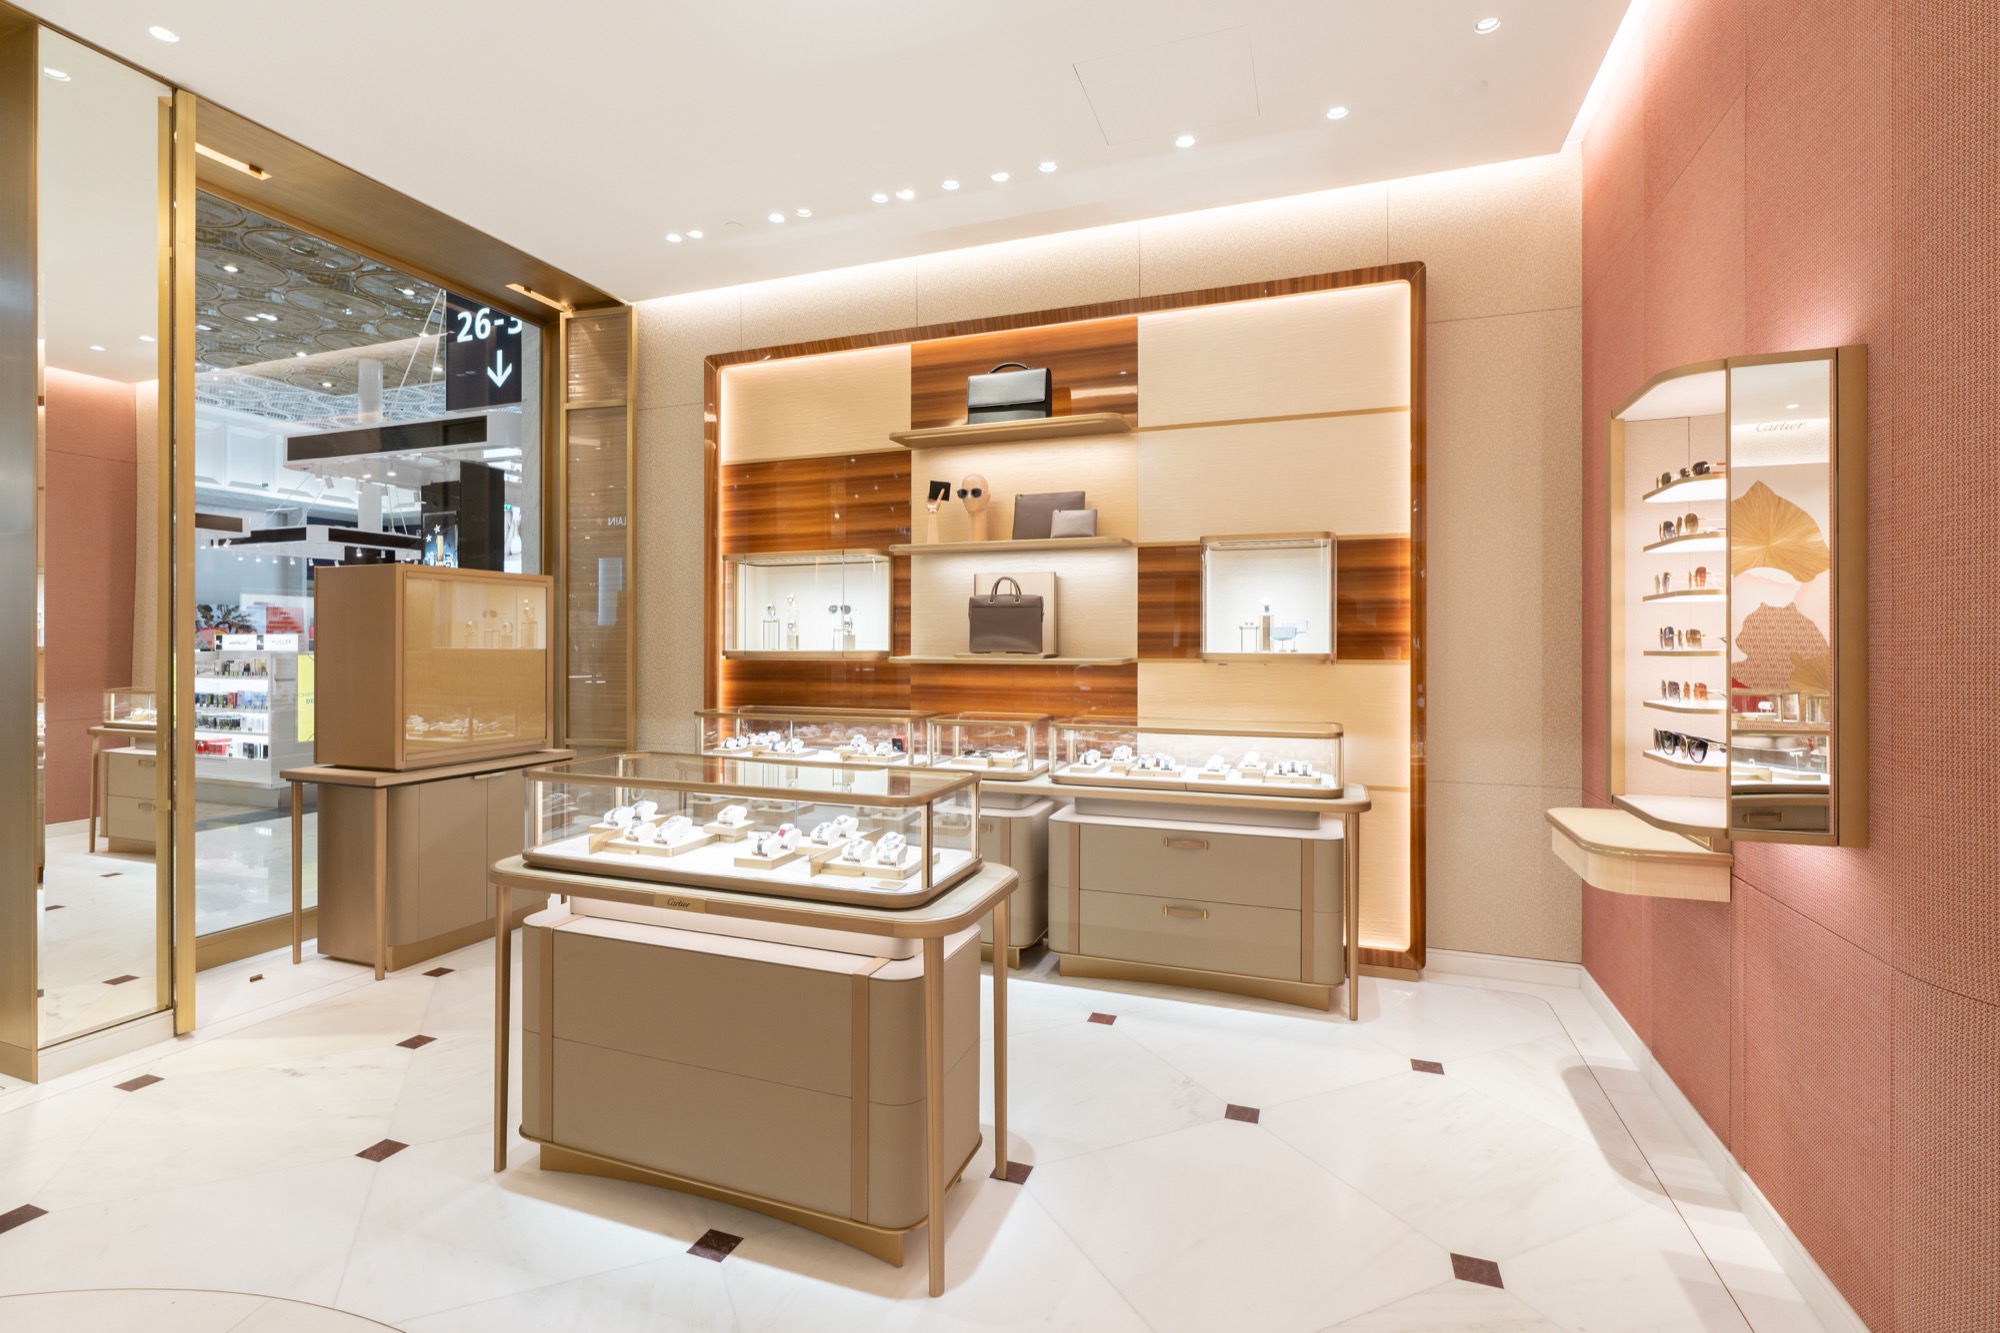 Cartier unveils the third boutique at Paris Charles de Gaulle Airport – GTR